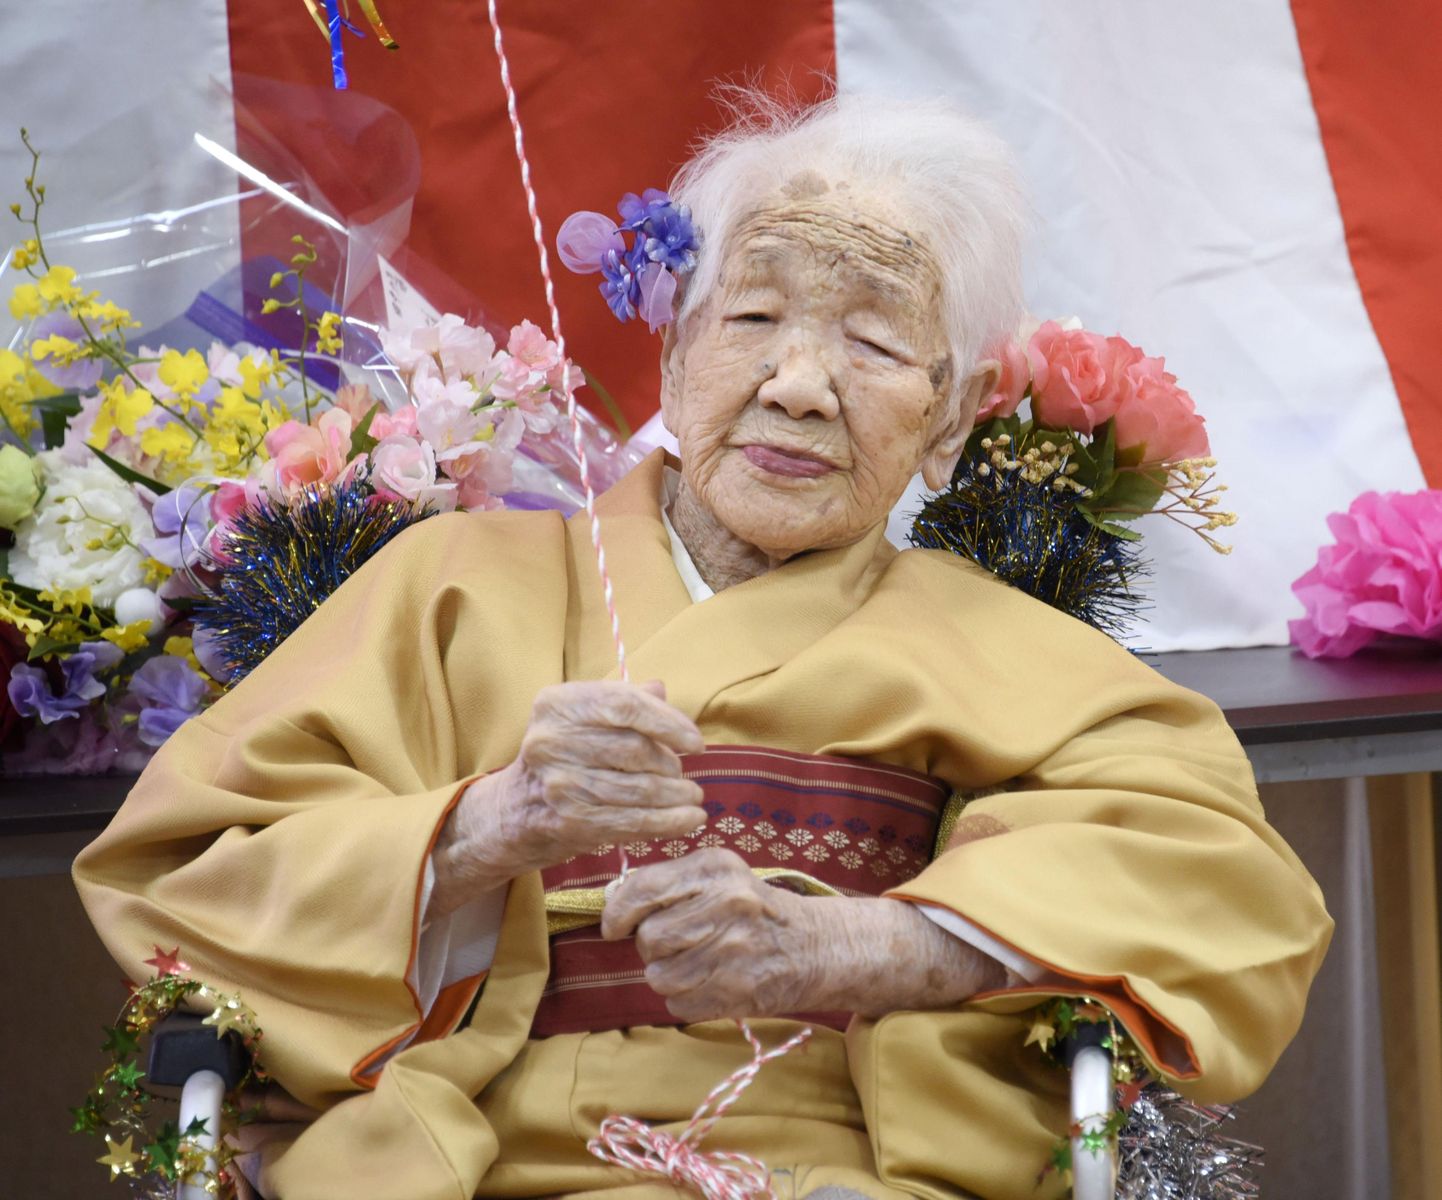 2. jaanuaril 1903 sündunud Kane Tanaka tähistamas oma 117. sünnipäeva